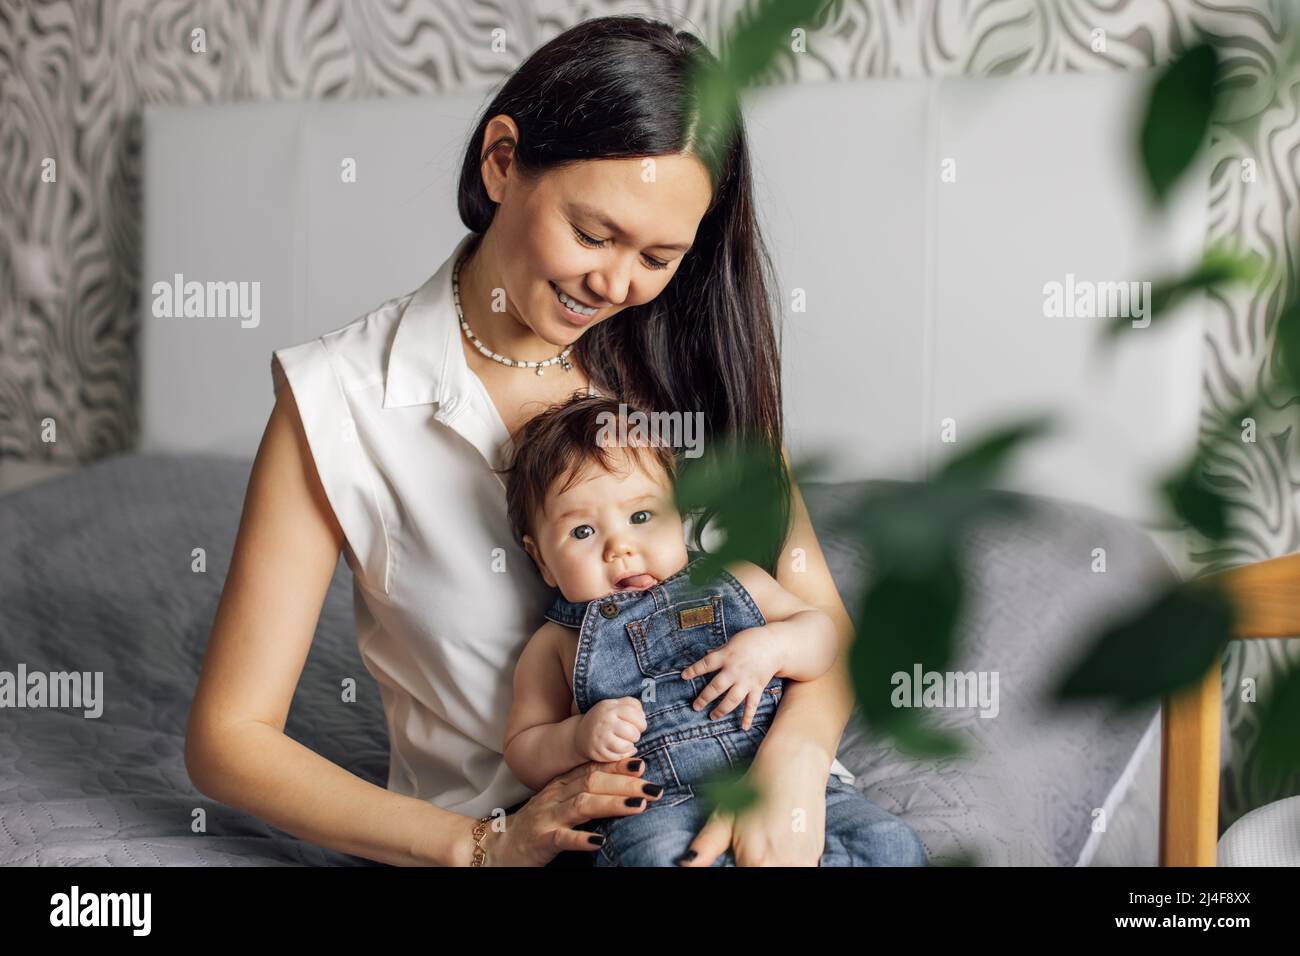 Retrato de madre feliz con hija pequeña en el dormitorio de primer plano, fondo borroso y planta verde. Siéntate en una cama gris con el bebé, captura feliz Foto de stock